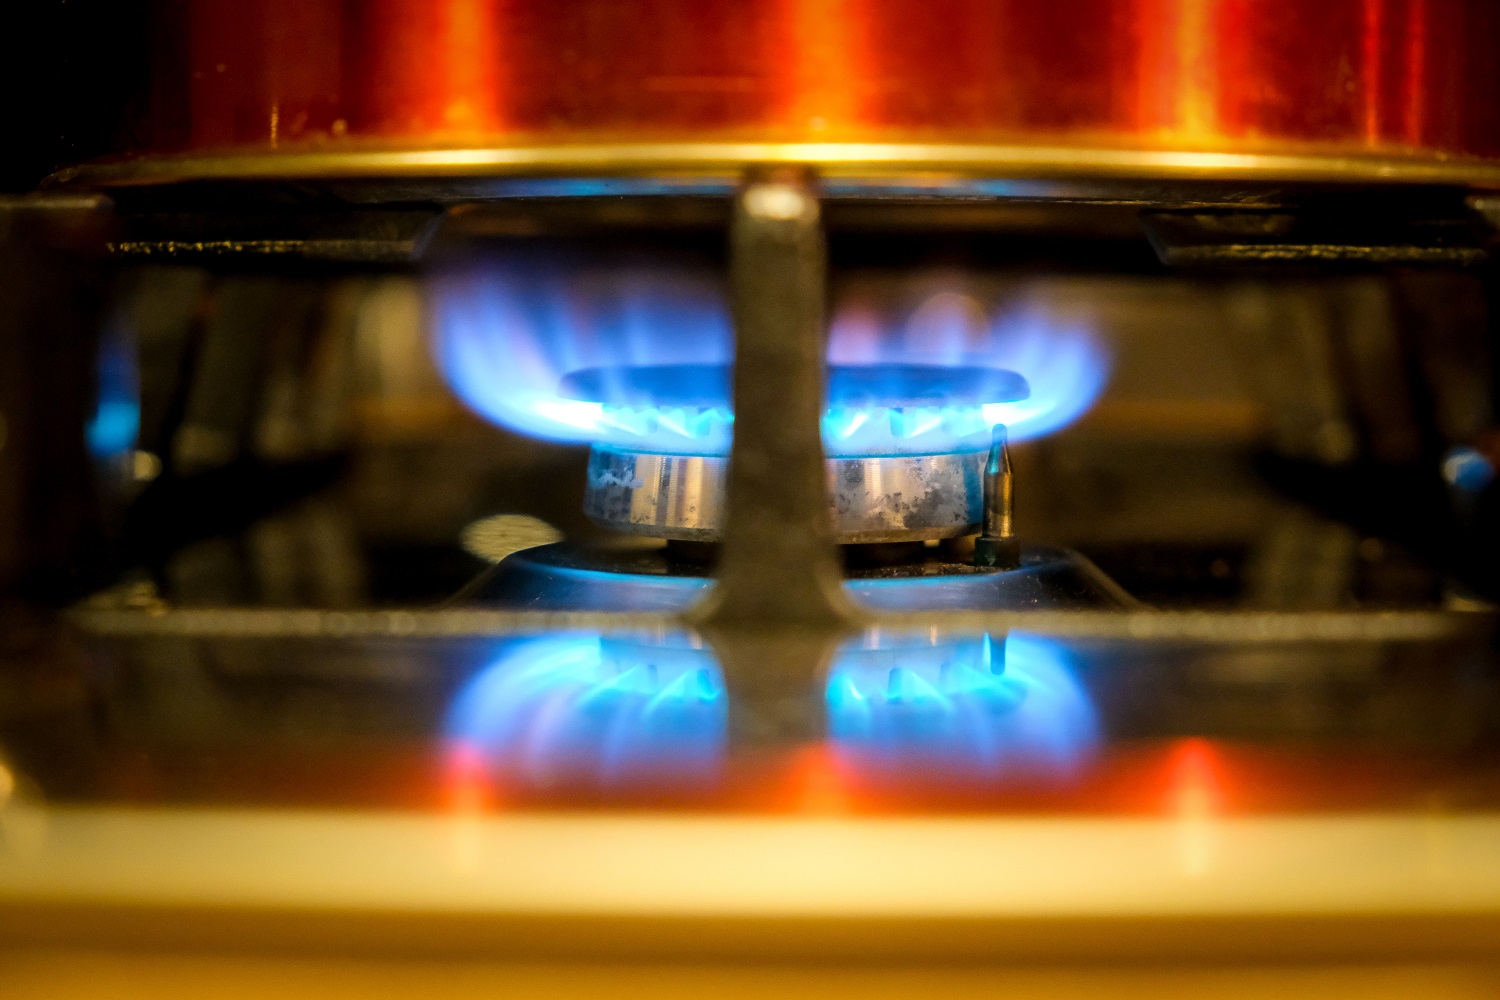 Nesureikšmina pagerėjusios dujų situacijos: metų gale gali kilti didelių rizikų